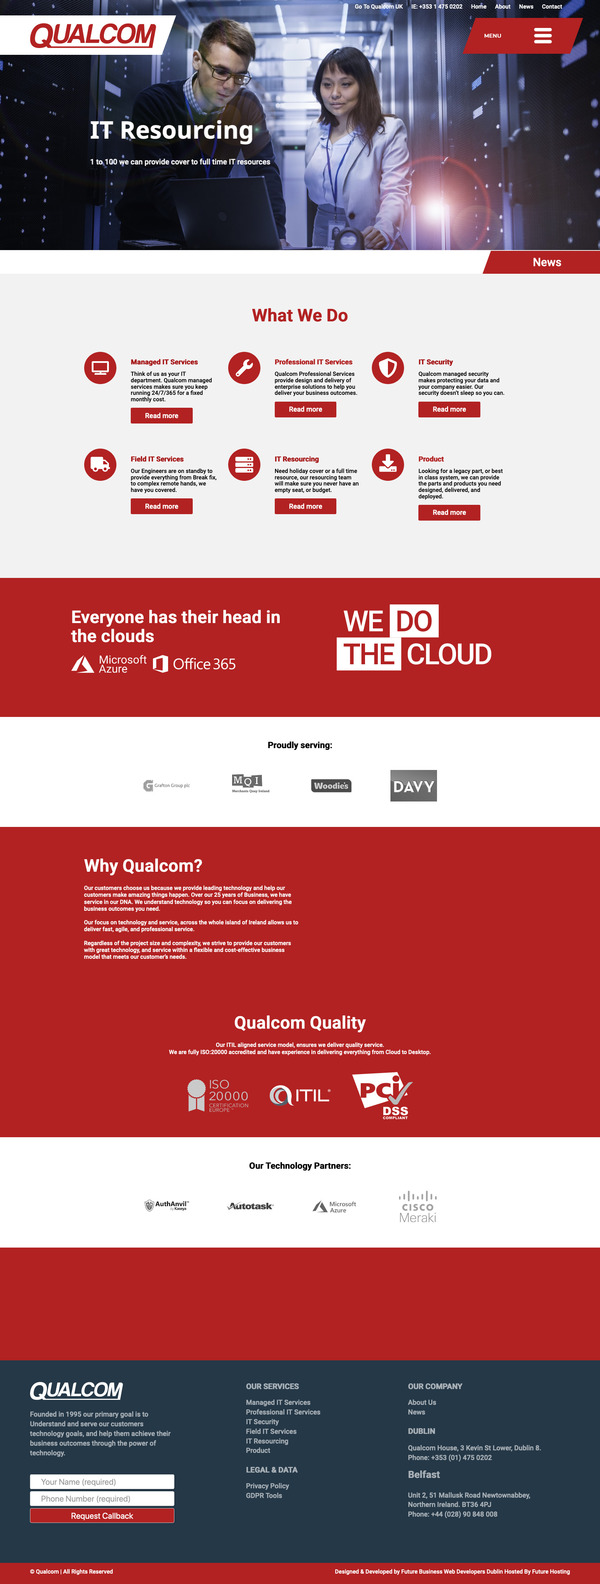 Website for Qualcom